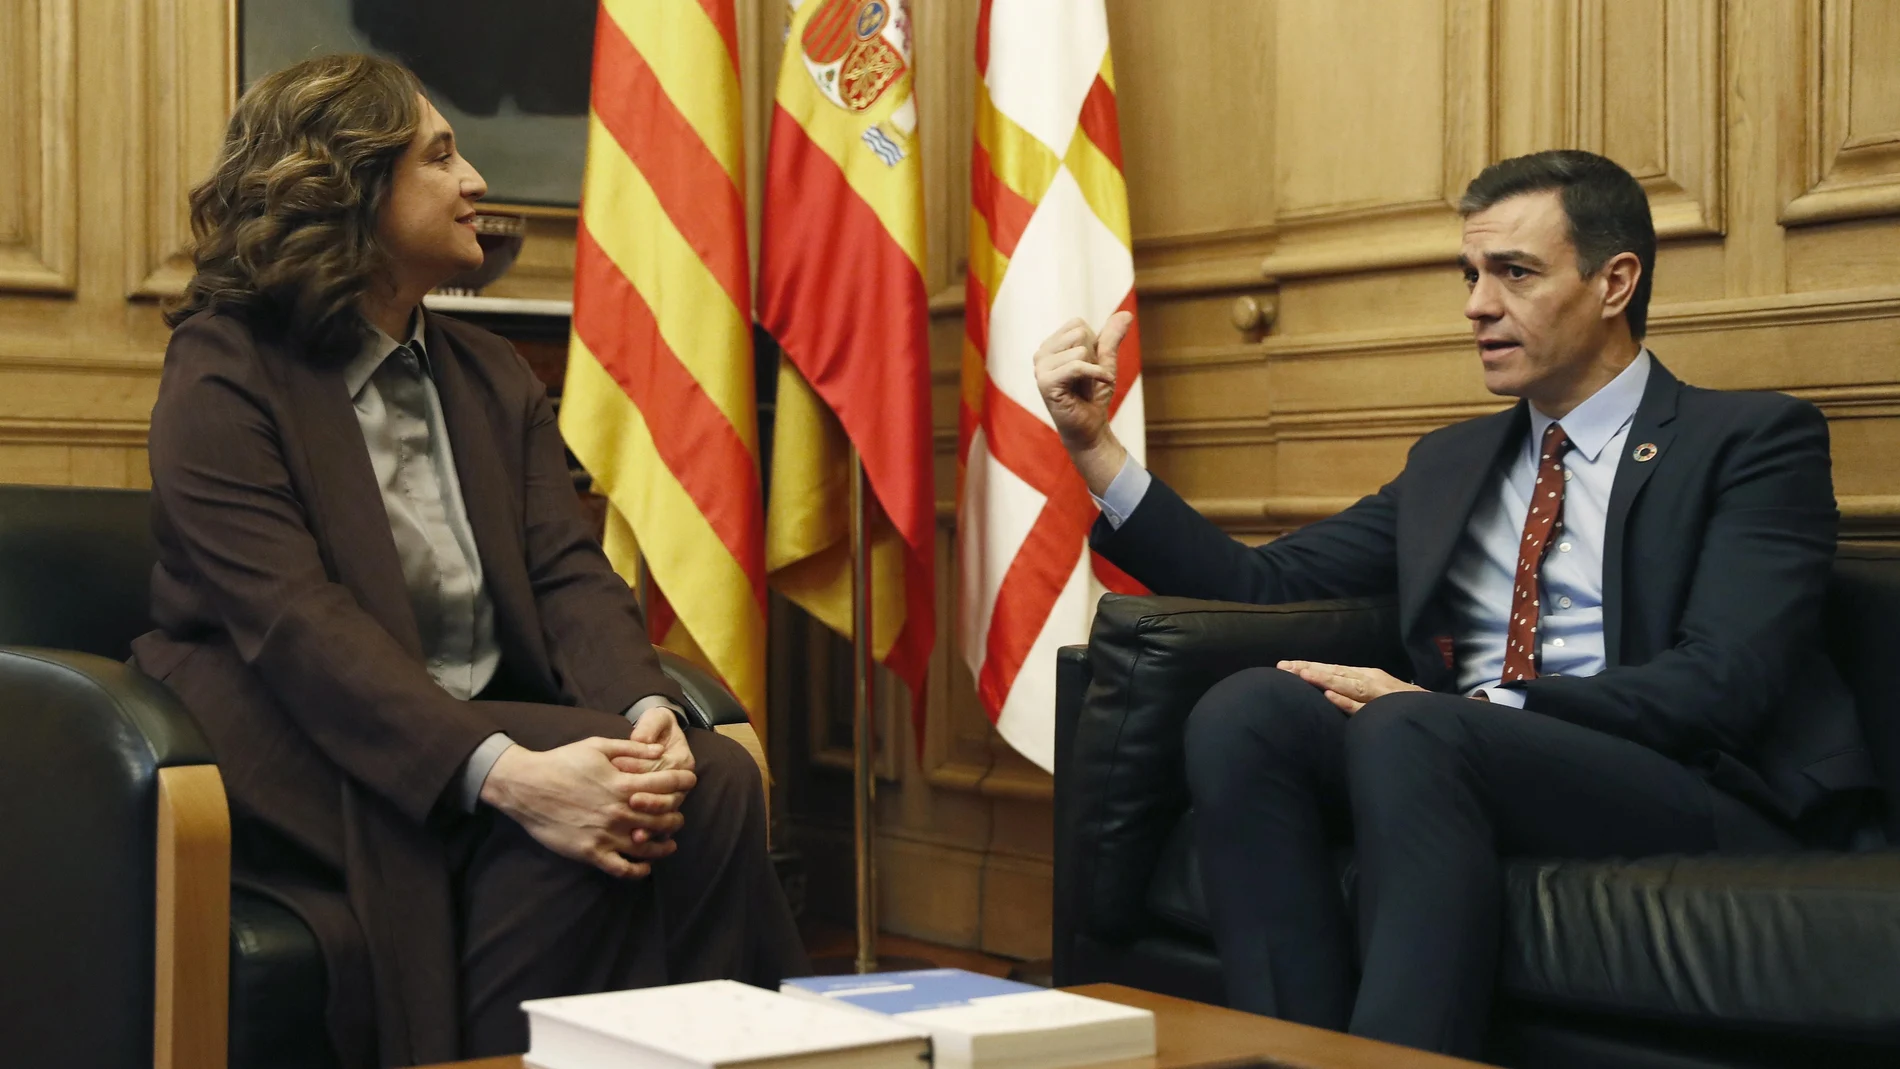 La alcaldesa de Barcelona, Ada Colau, recibe este viernes en la sede del Ayuntamiento al presidente del Gobierno, Pedro Sánchez, dentro de la visita institucional de dos días a Cataluña. EFE/ Toni Albir